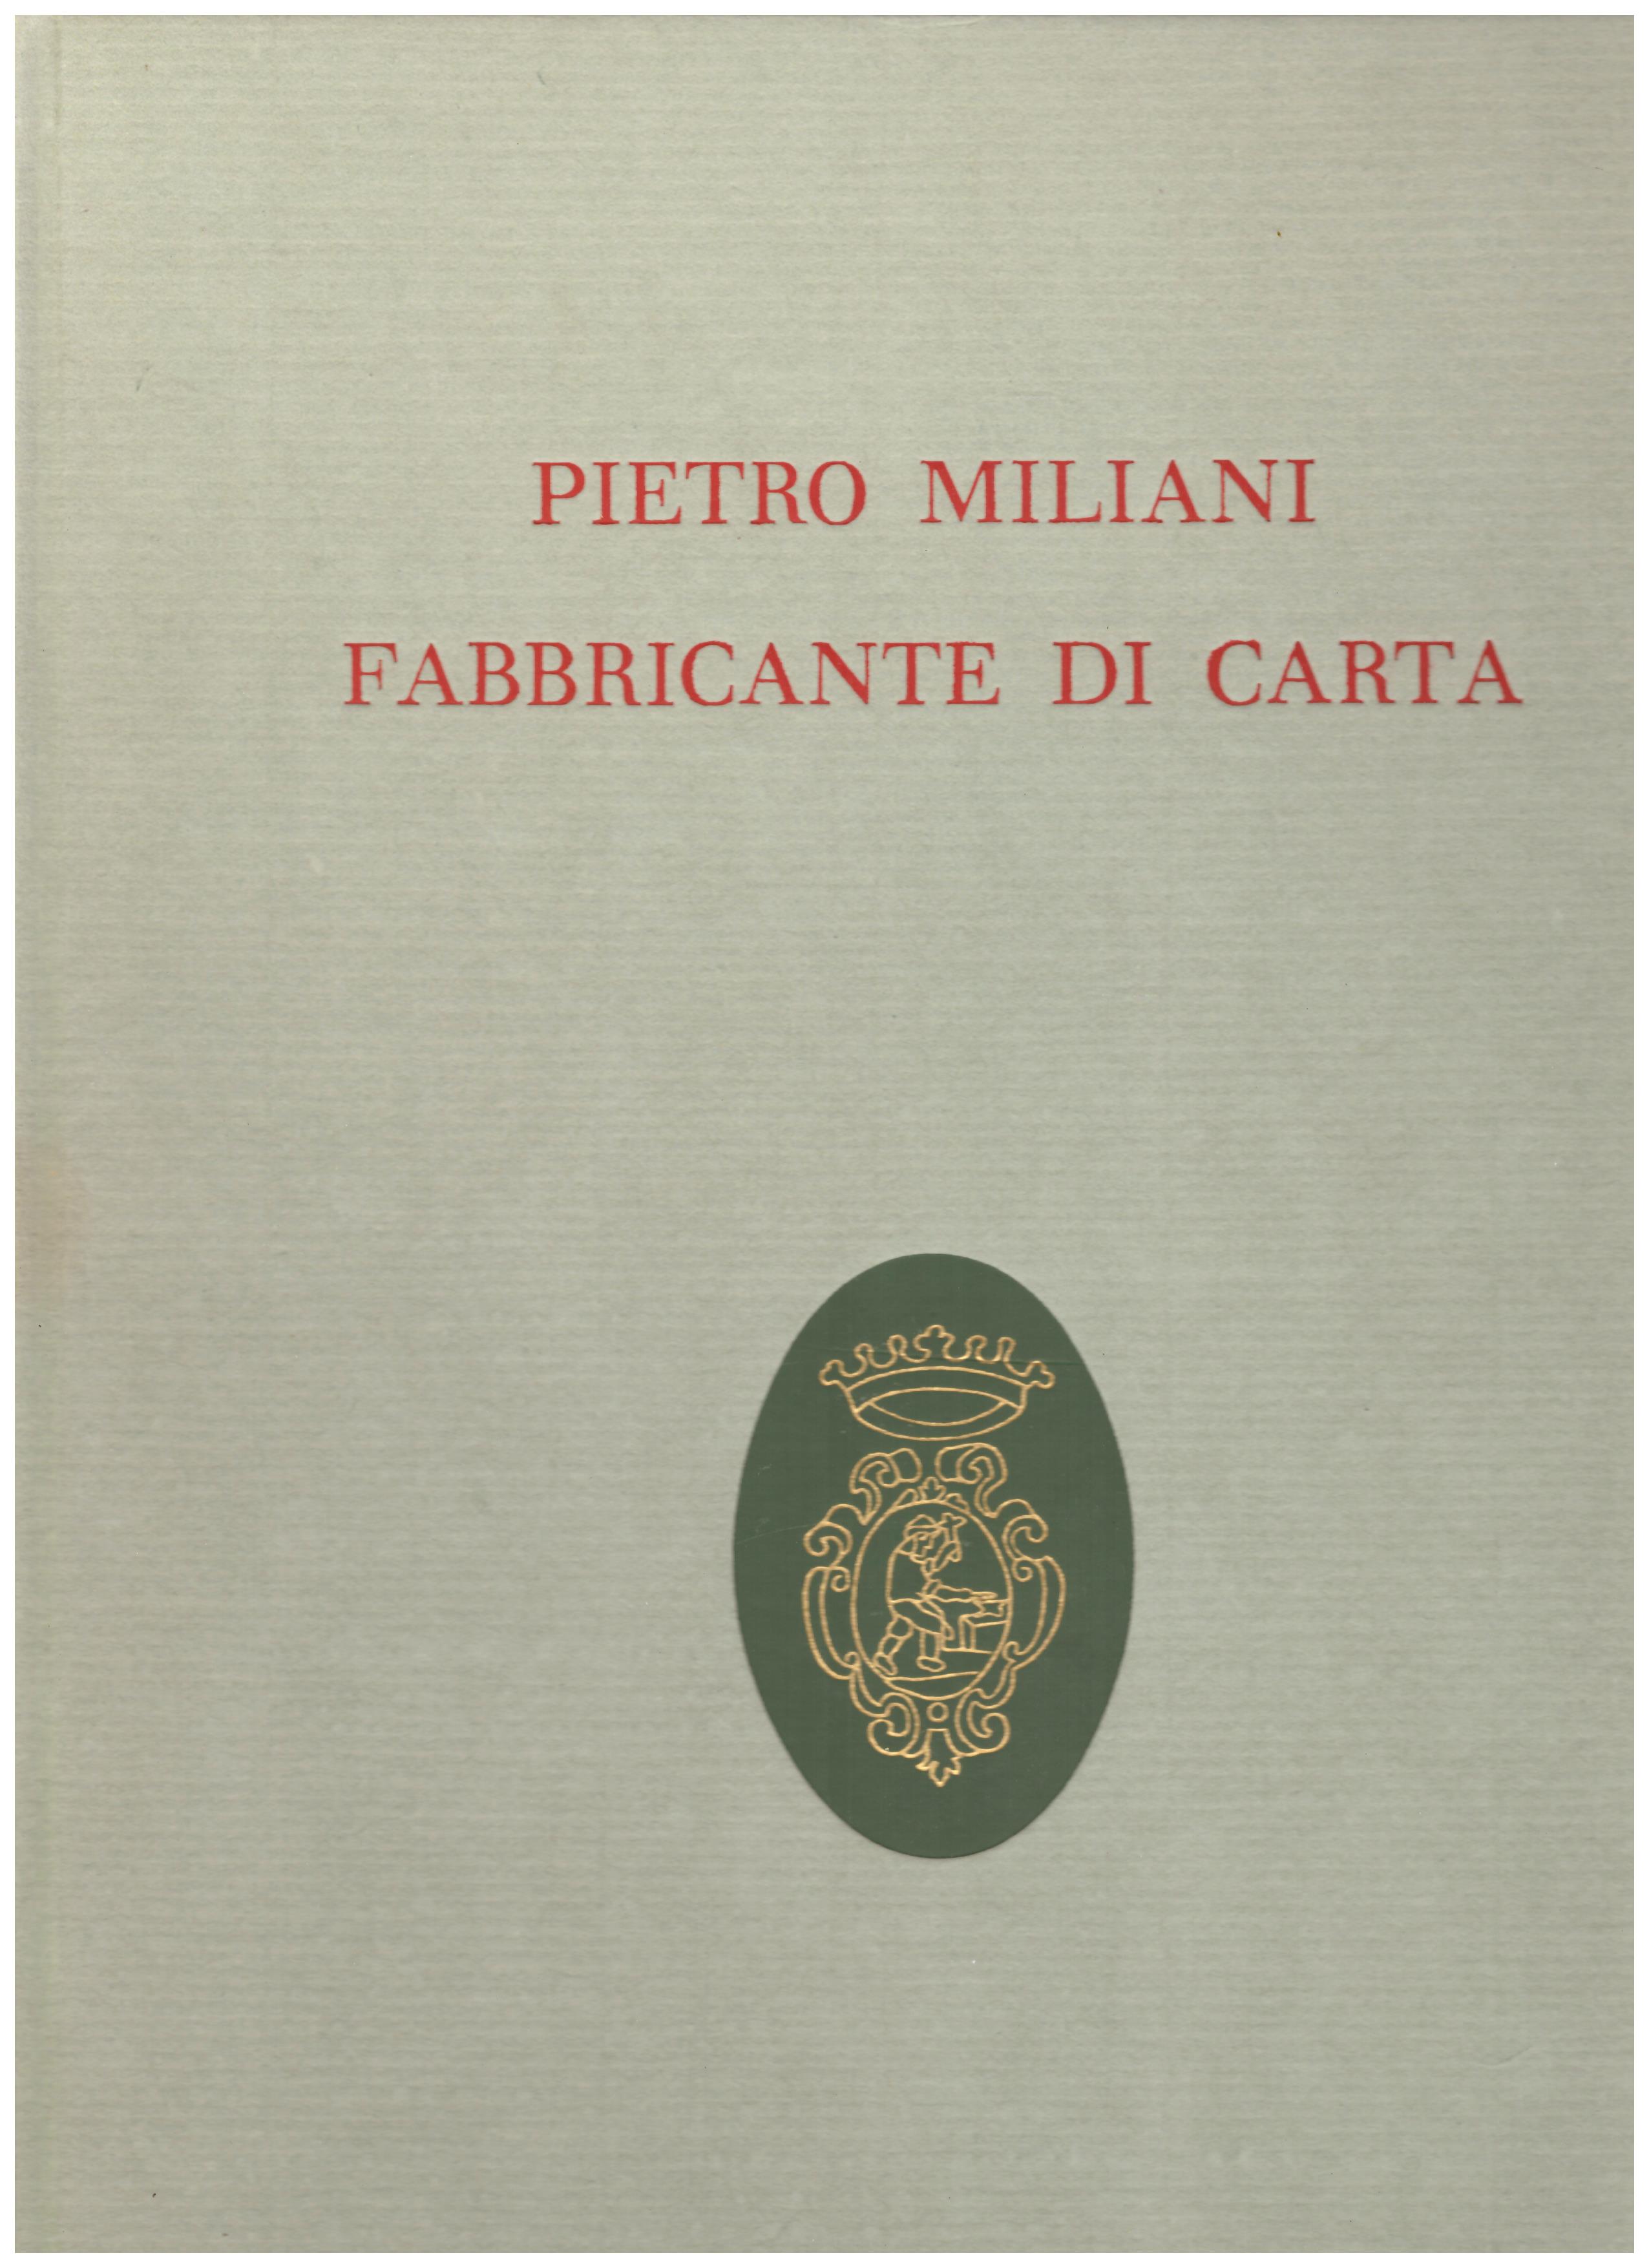 Titolo: Pietro Miliani fabbricante di carta Autore : AA.VV. A cura di Andrea Gasparinetti Editore: Cartiere Miliani, MCMLXIII